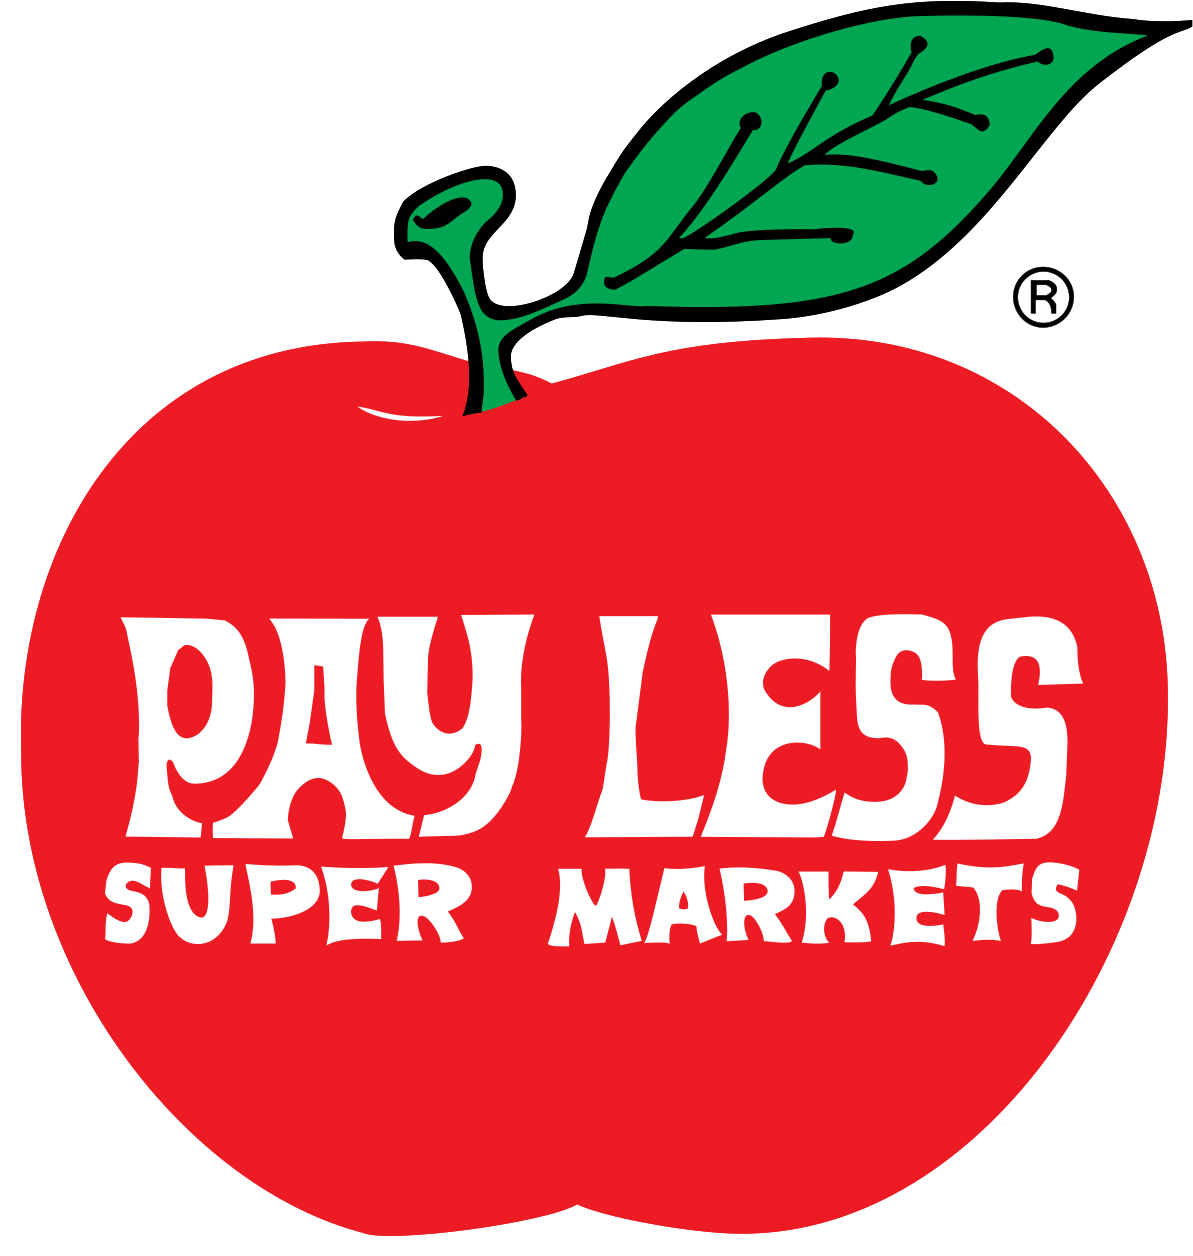 Pay Less Super Markets Logo (1200x1265)